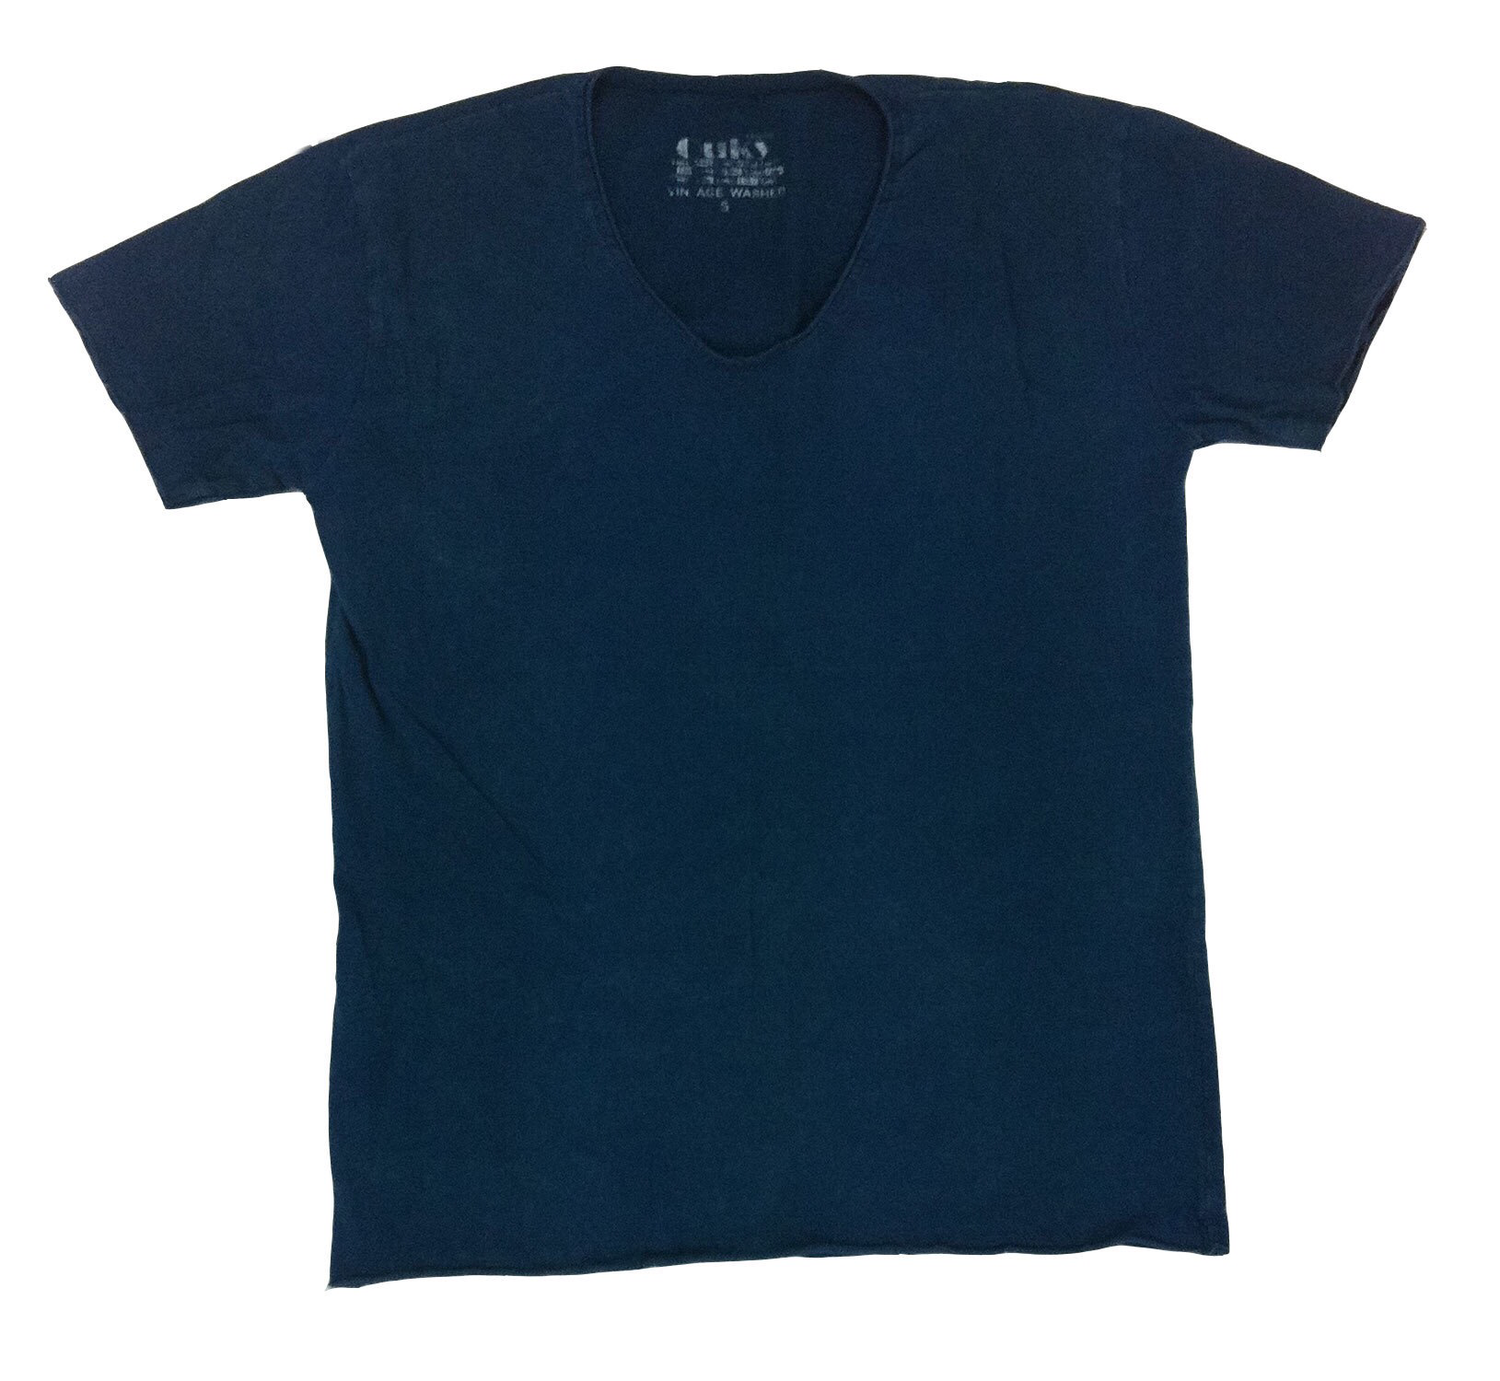 Ouky Vintage Washed Tshirt Dark Blue Large Size